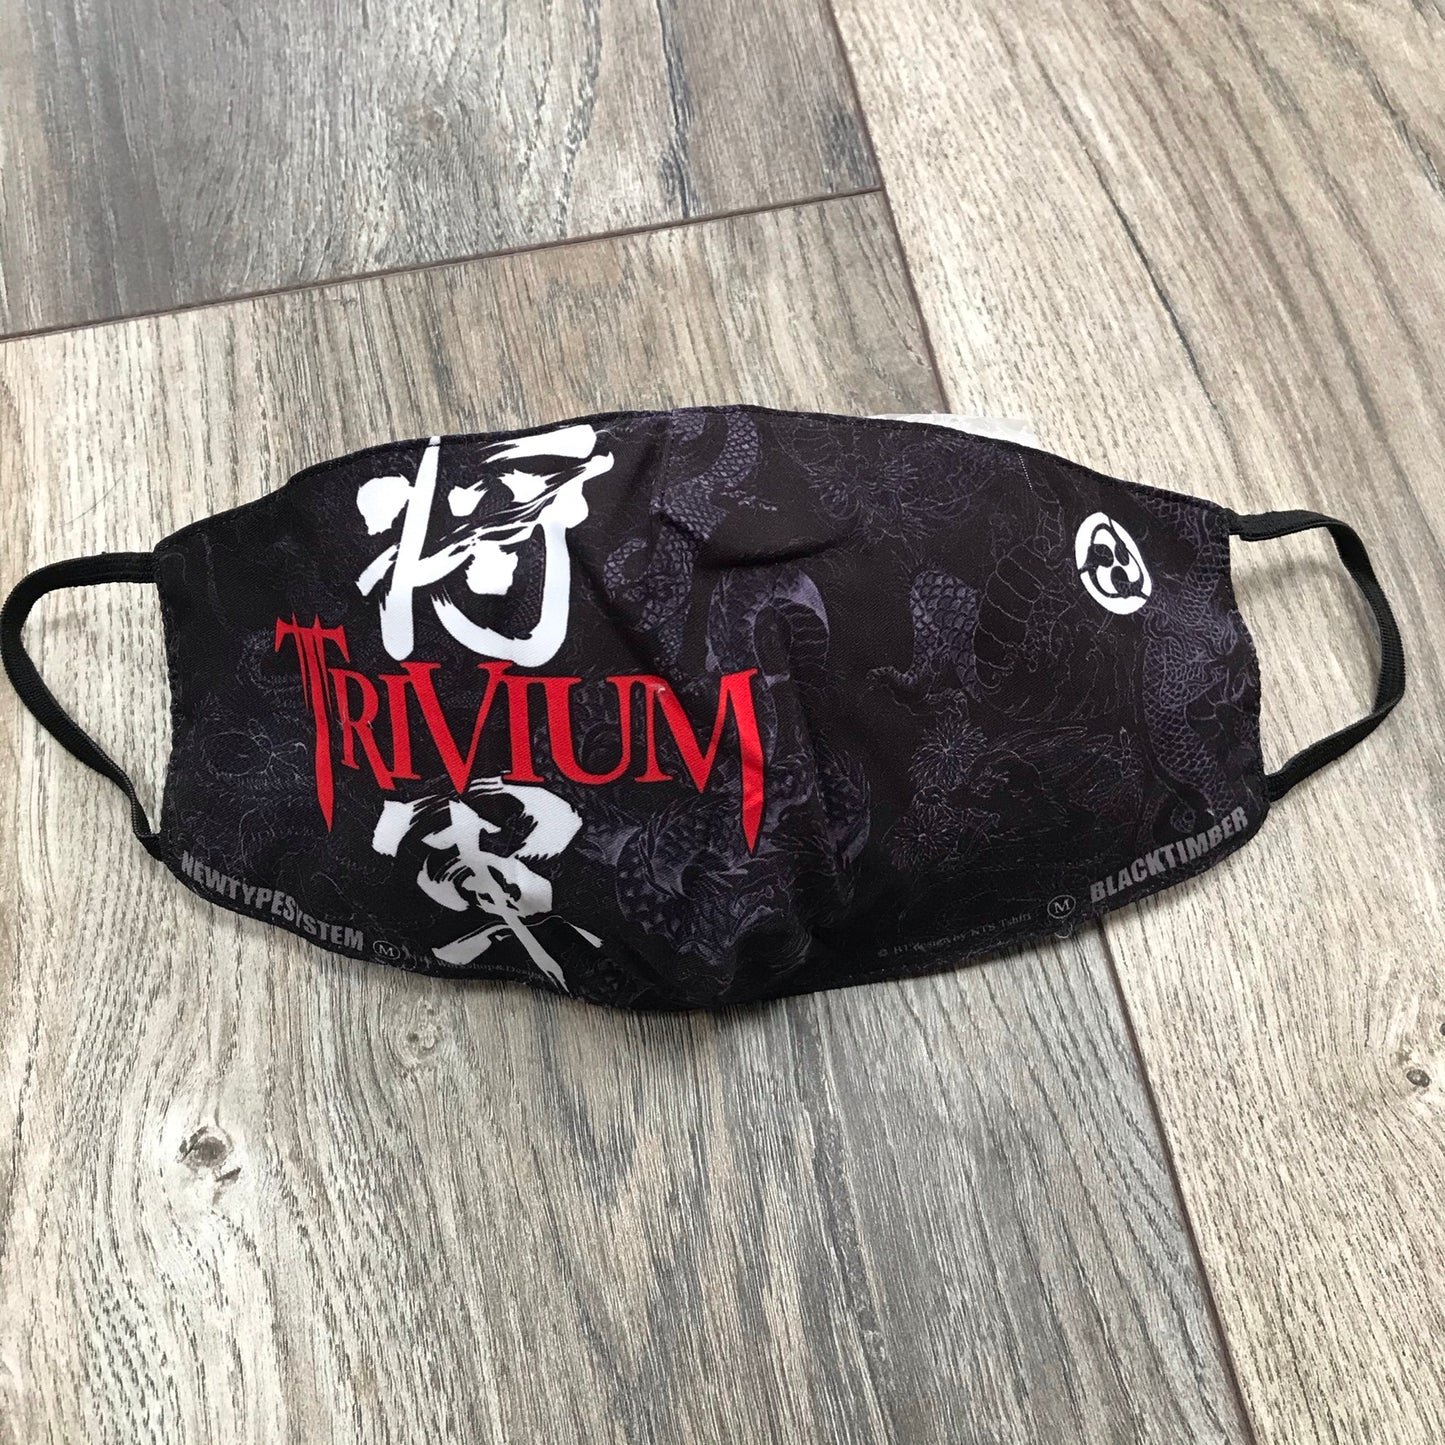 Trivium - face mask